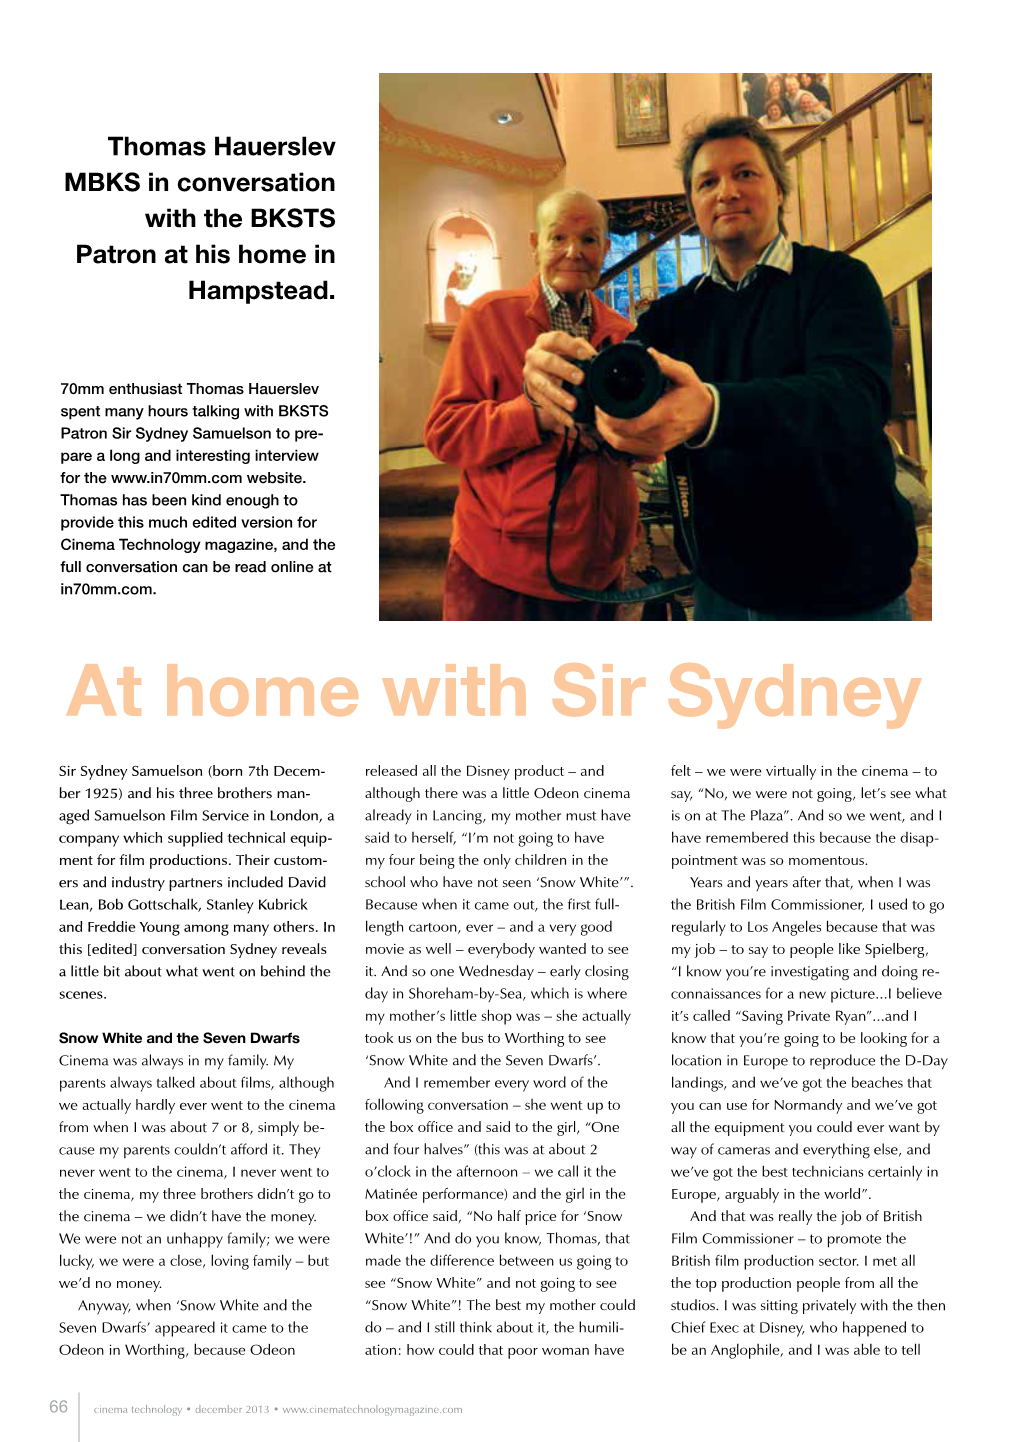 Sir Sydney PDF from Cinema Technology